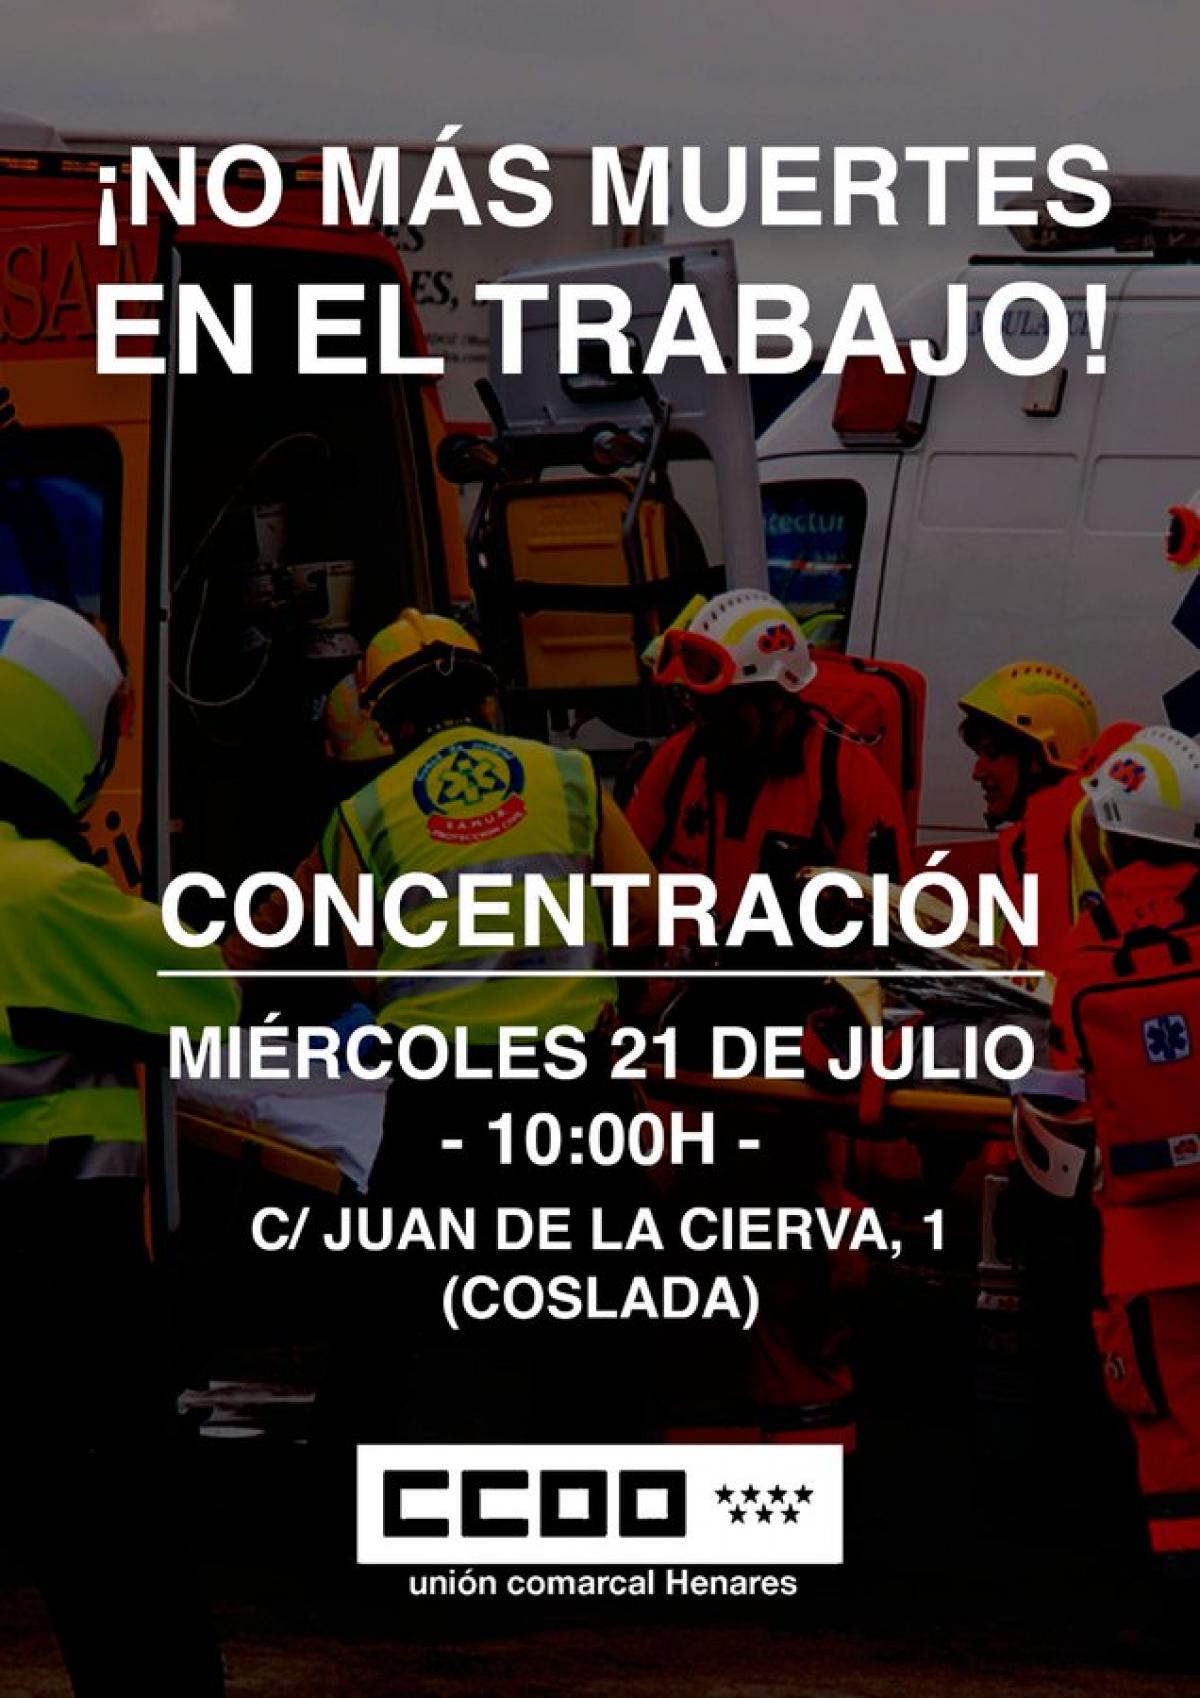 CCOO y UGT convocan una concentraci�n por el accidente laboral mortal ocurrido en Coslada el 14 de julio